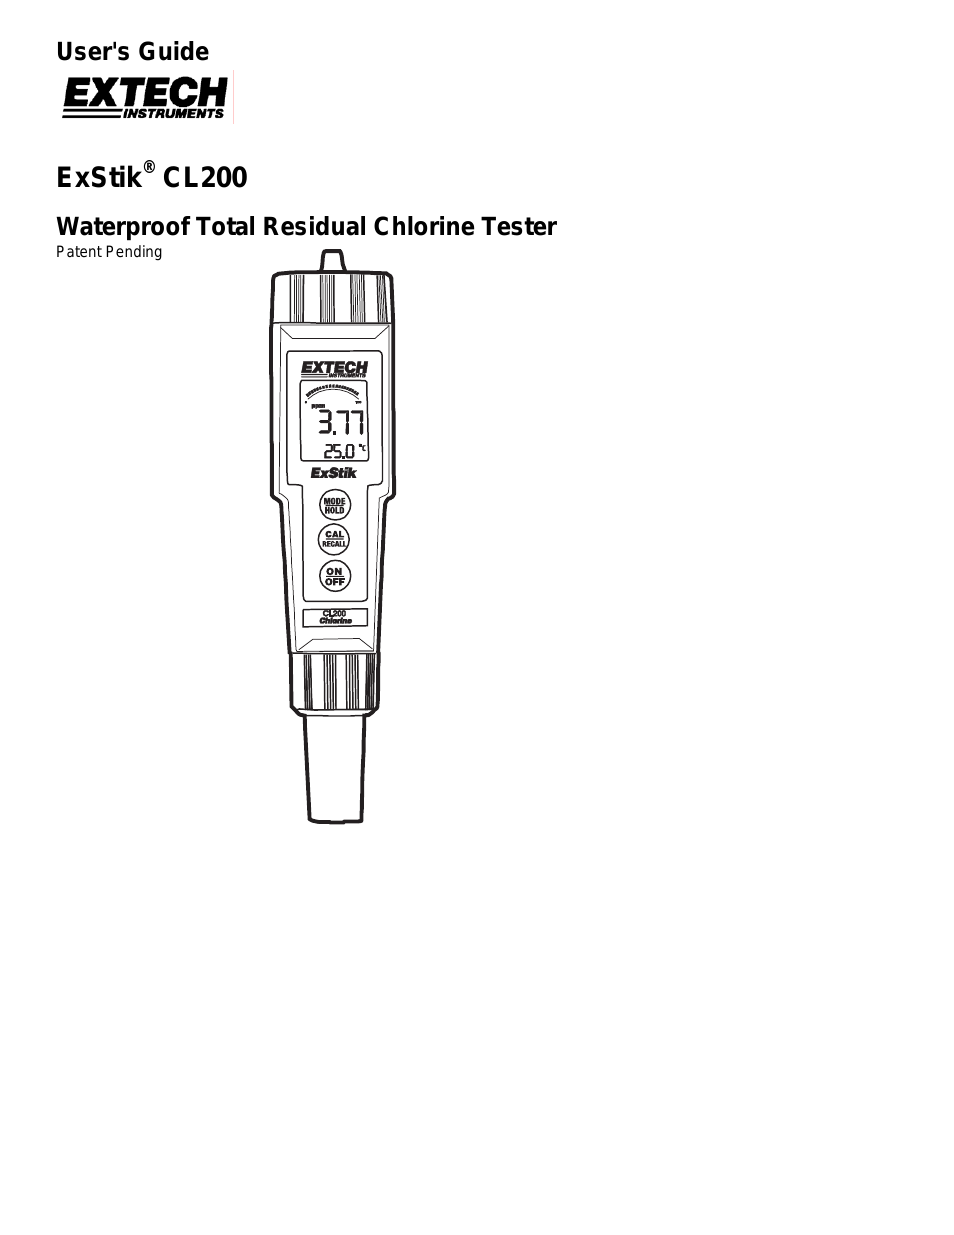 CL200 Waterproof Total Residual Chlorine Tester